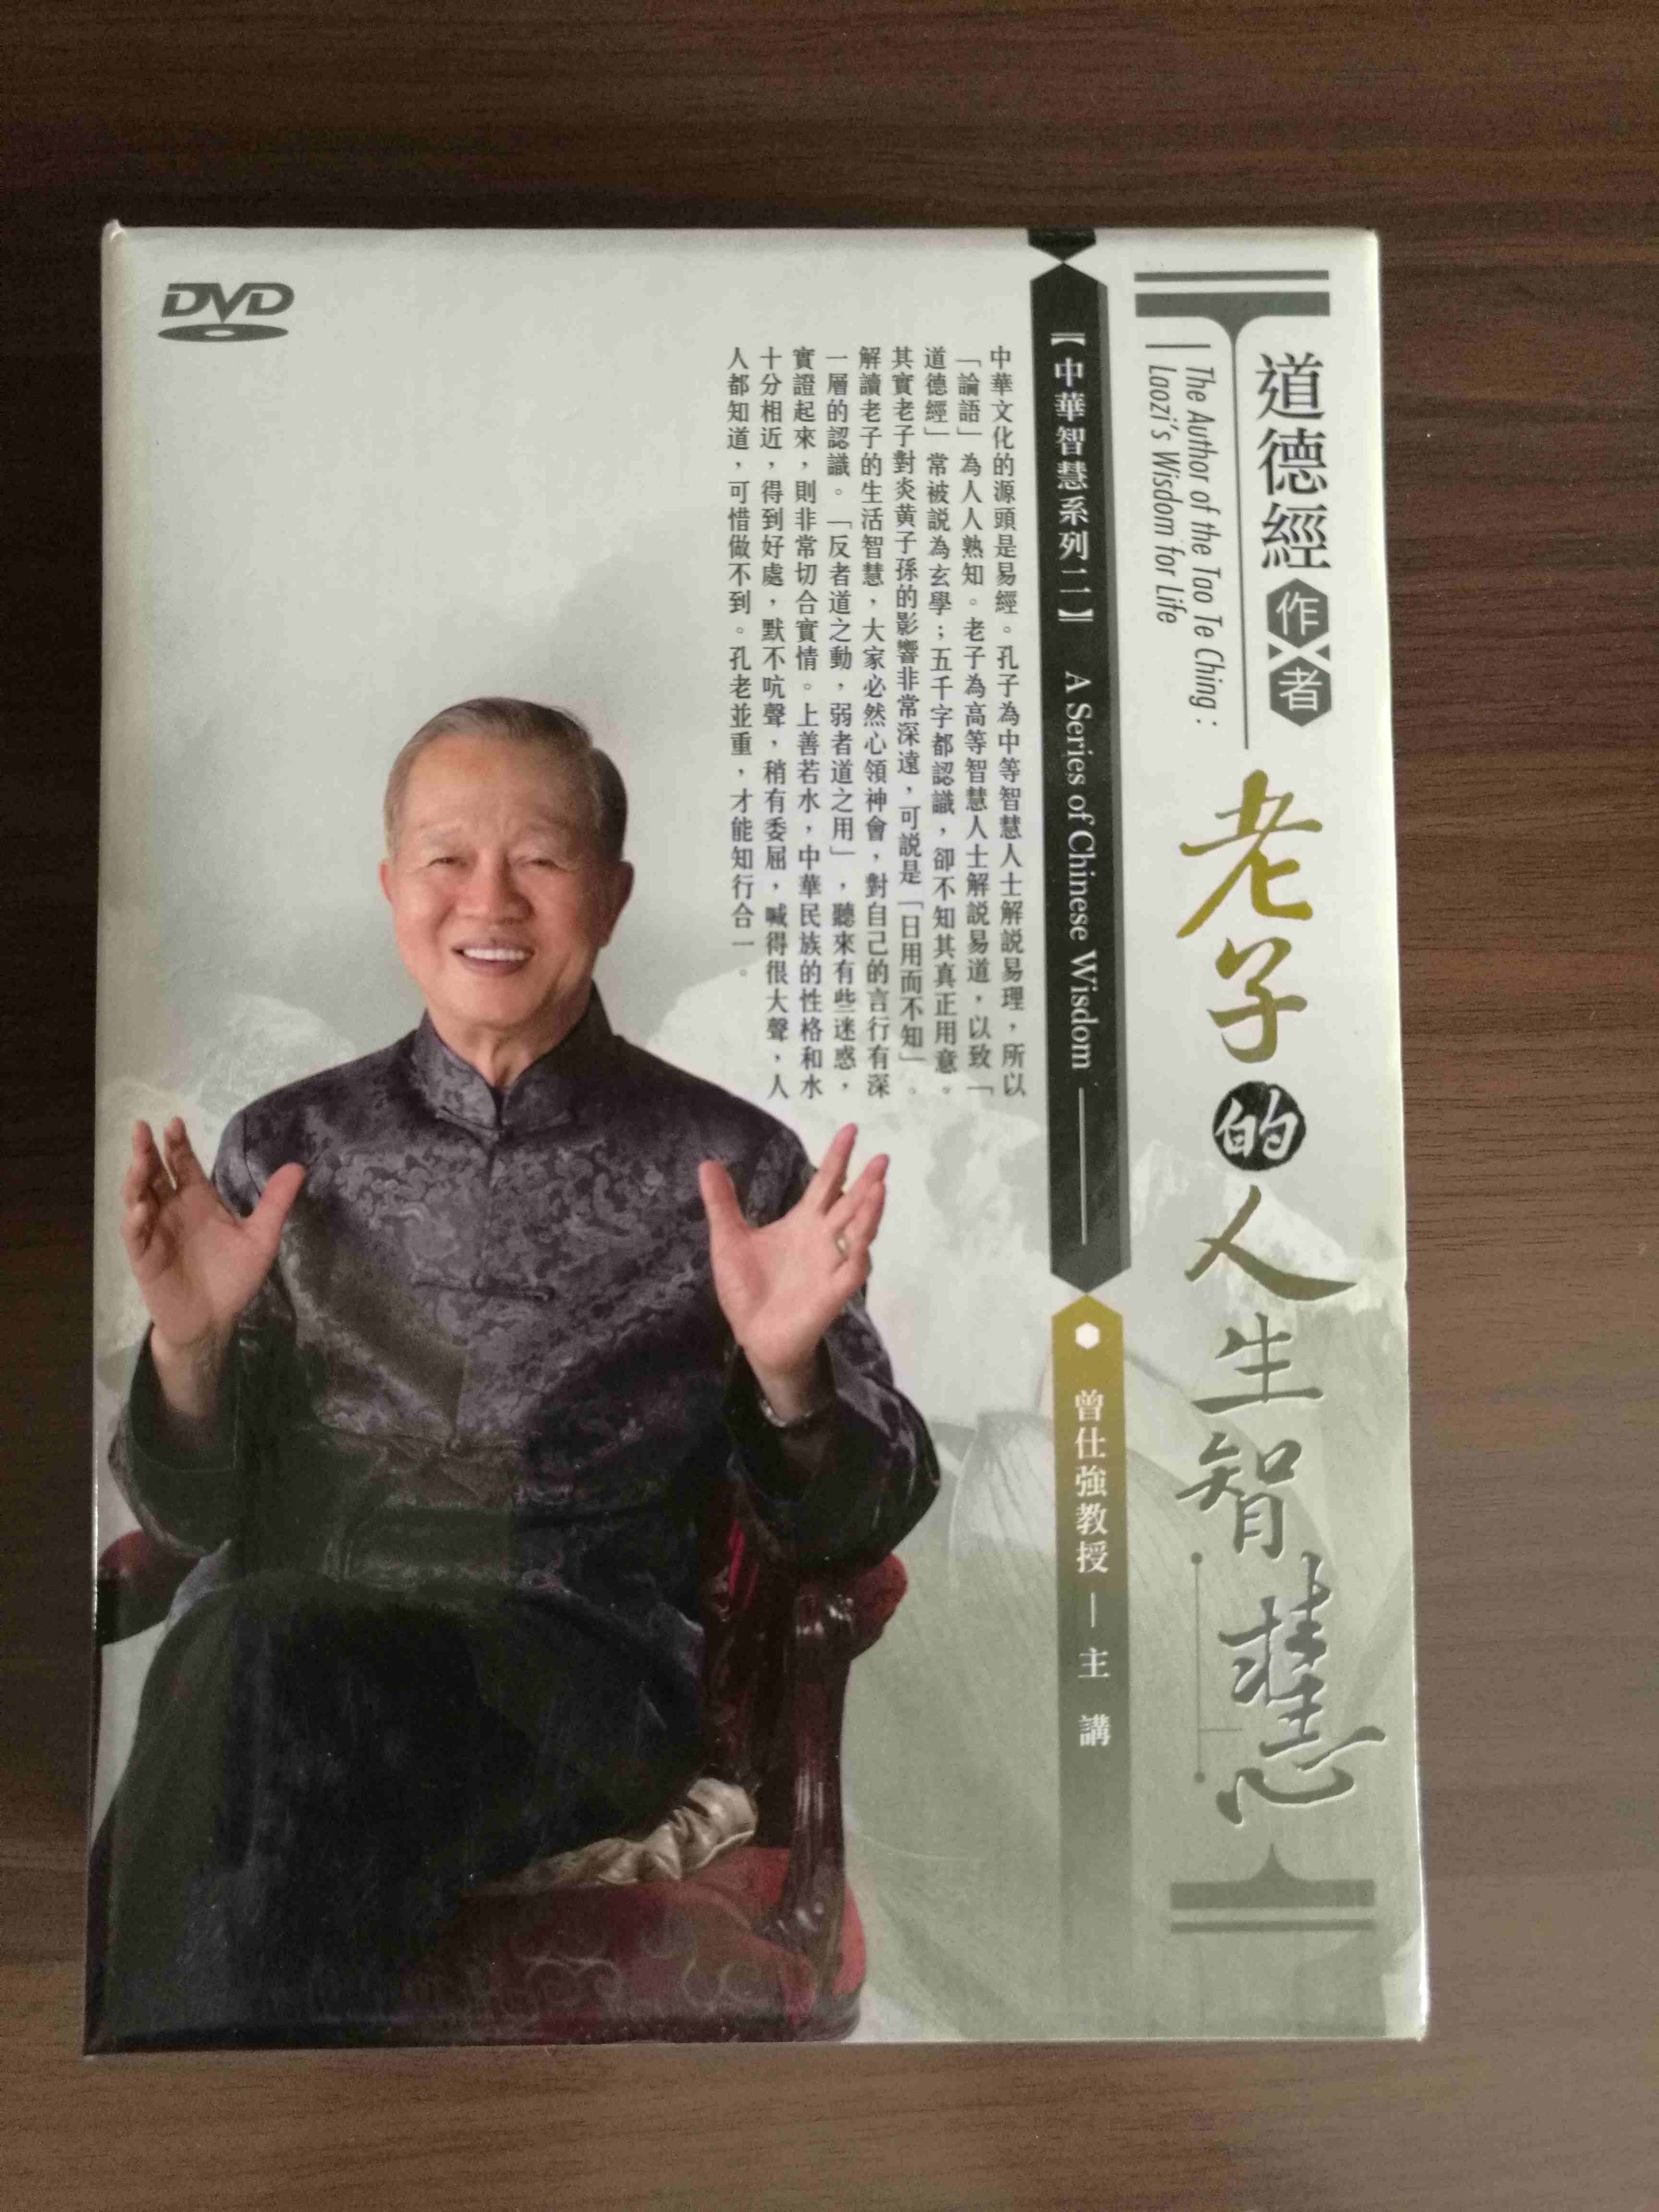 曾仕强教授《老子道德经的人生智慧》台湾原版DVD光盘(6碟) 定价：新台币4800元
赠送，《道德经的奥秘》、《道德经的玄妙》各一册。